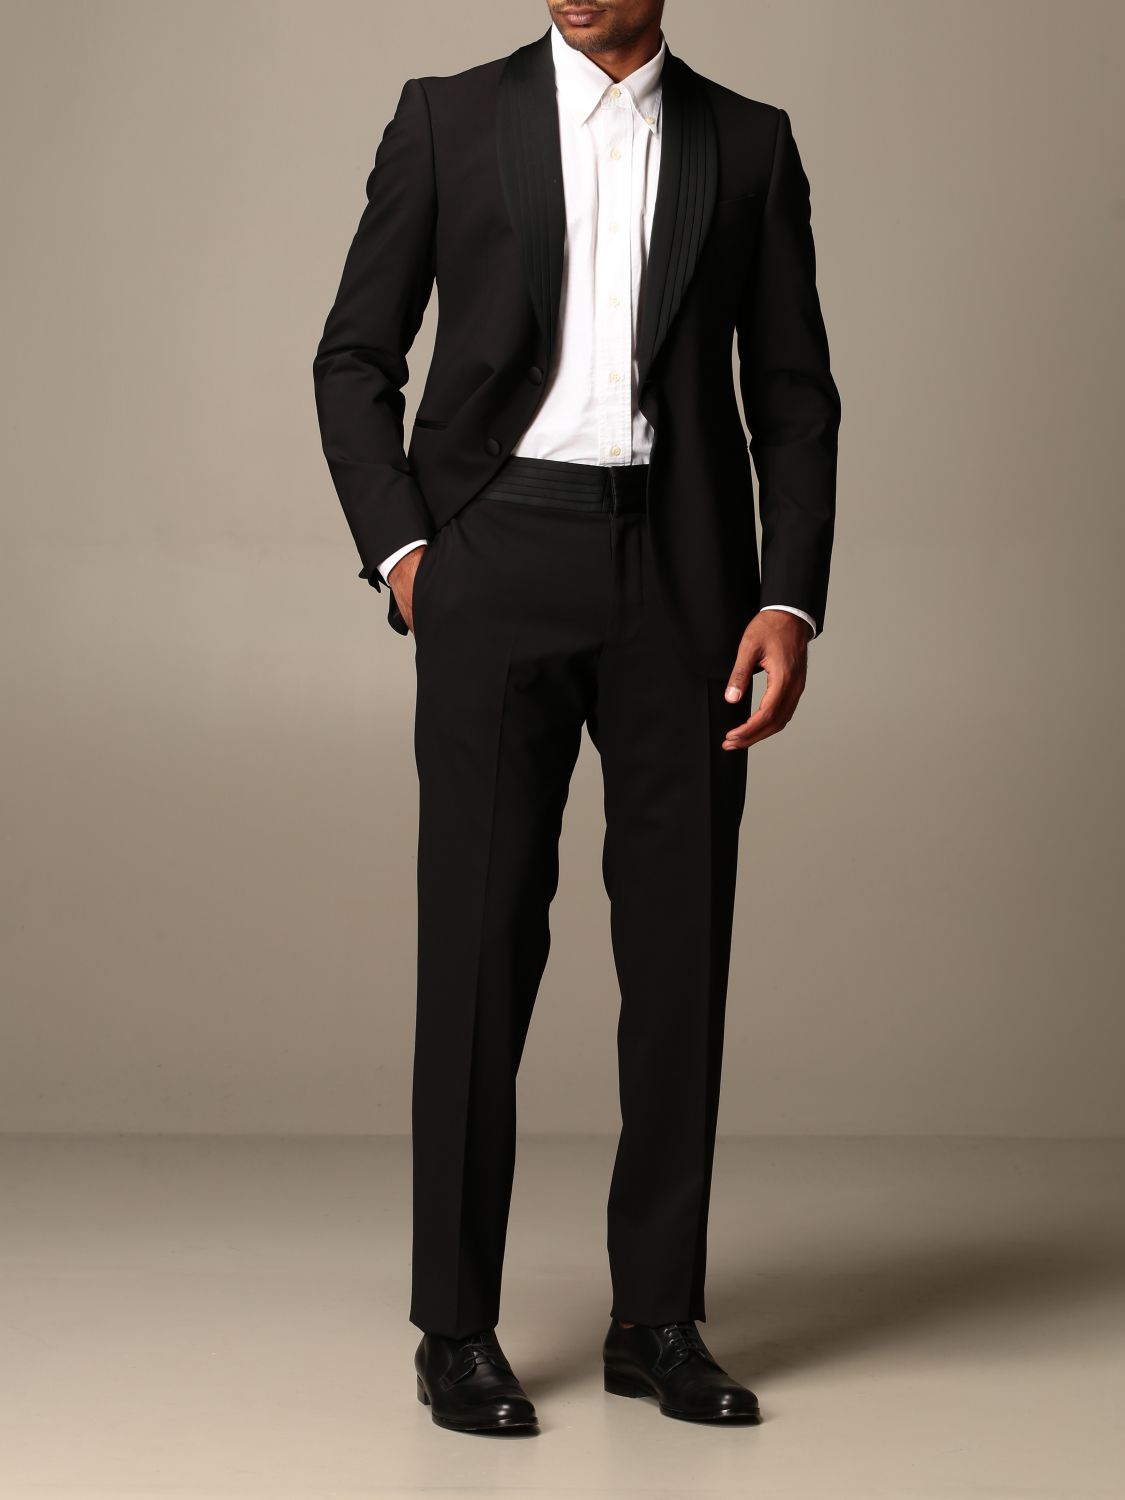 Emporio Armani Outlet: tuxedo suit drop 7 - Black | Emporio Armani suit  91VMTJ 01506 online on 